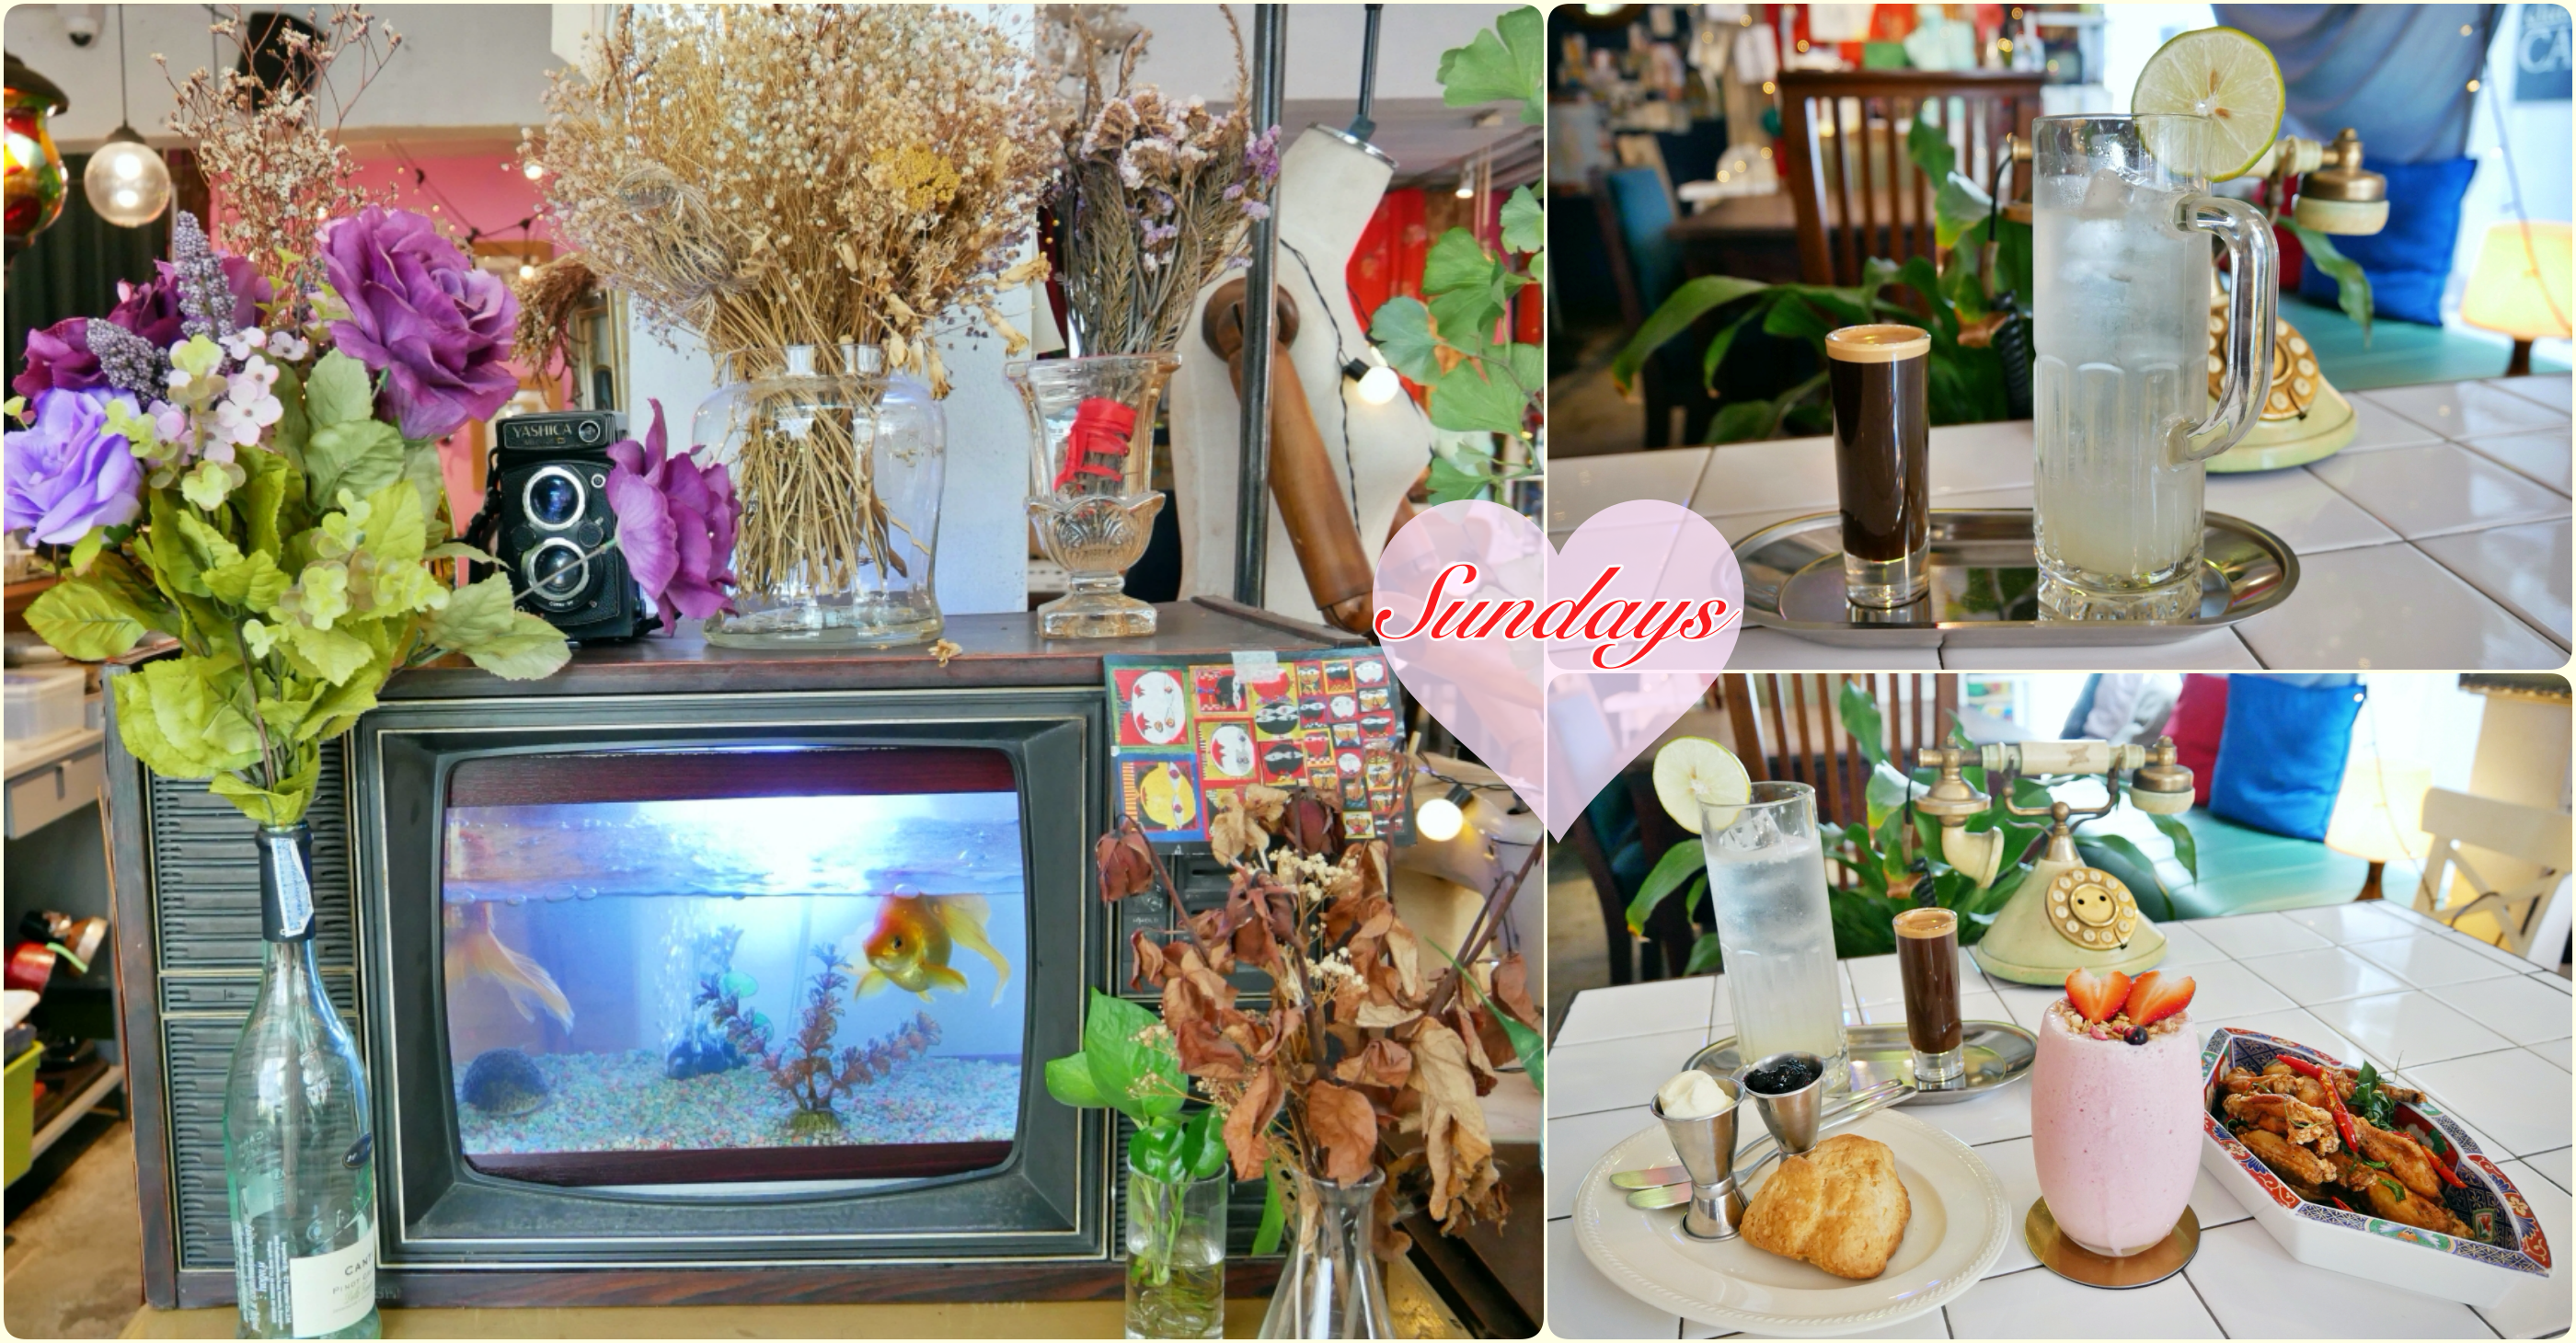 [曼谷美食]Sundays|近Phrom Phong站~結合咖啡、藝術和料理的複合式餐廳．混搭風格 @VIVIYU小世界